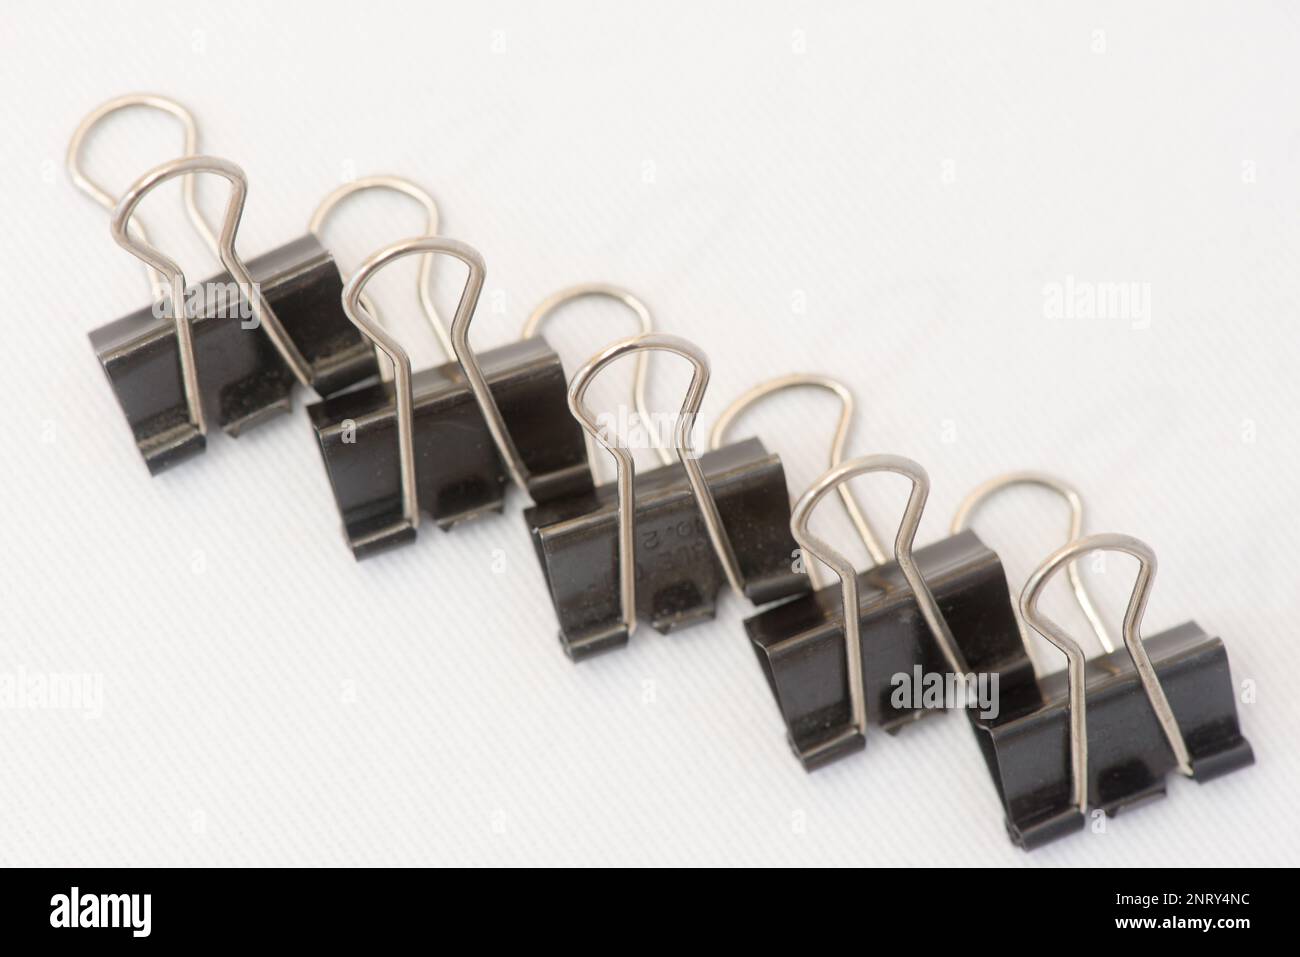 Nahaufnahme von mehreren Papier clips in verschiedenen Positionen und zufällig angeordnet. Stockfoto